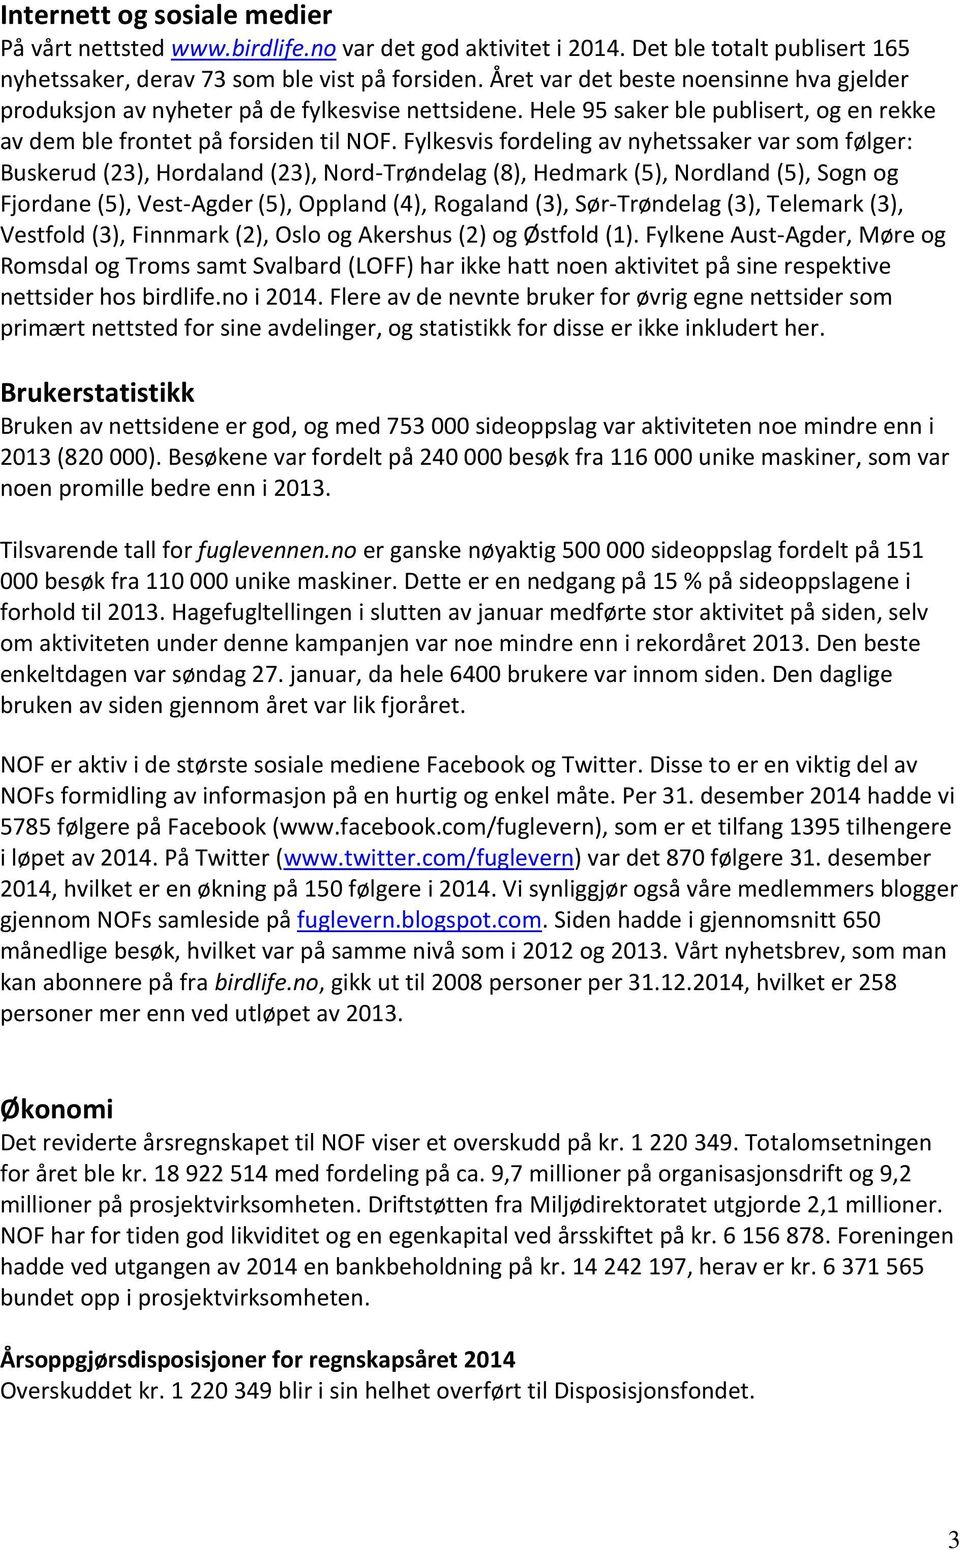 Fylkesvis fordeling av nyhetssaker var som følger: Buskerud (23), Hordaland (23), Nord-Trøndelag (8), Hedmark (5), Nordland (5), Sogn og Fjordane (5), Vest-Agder (5), Oppland (4), Rogaland (3),